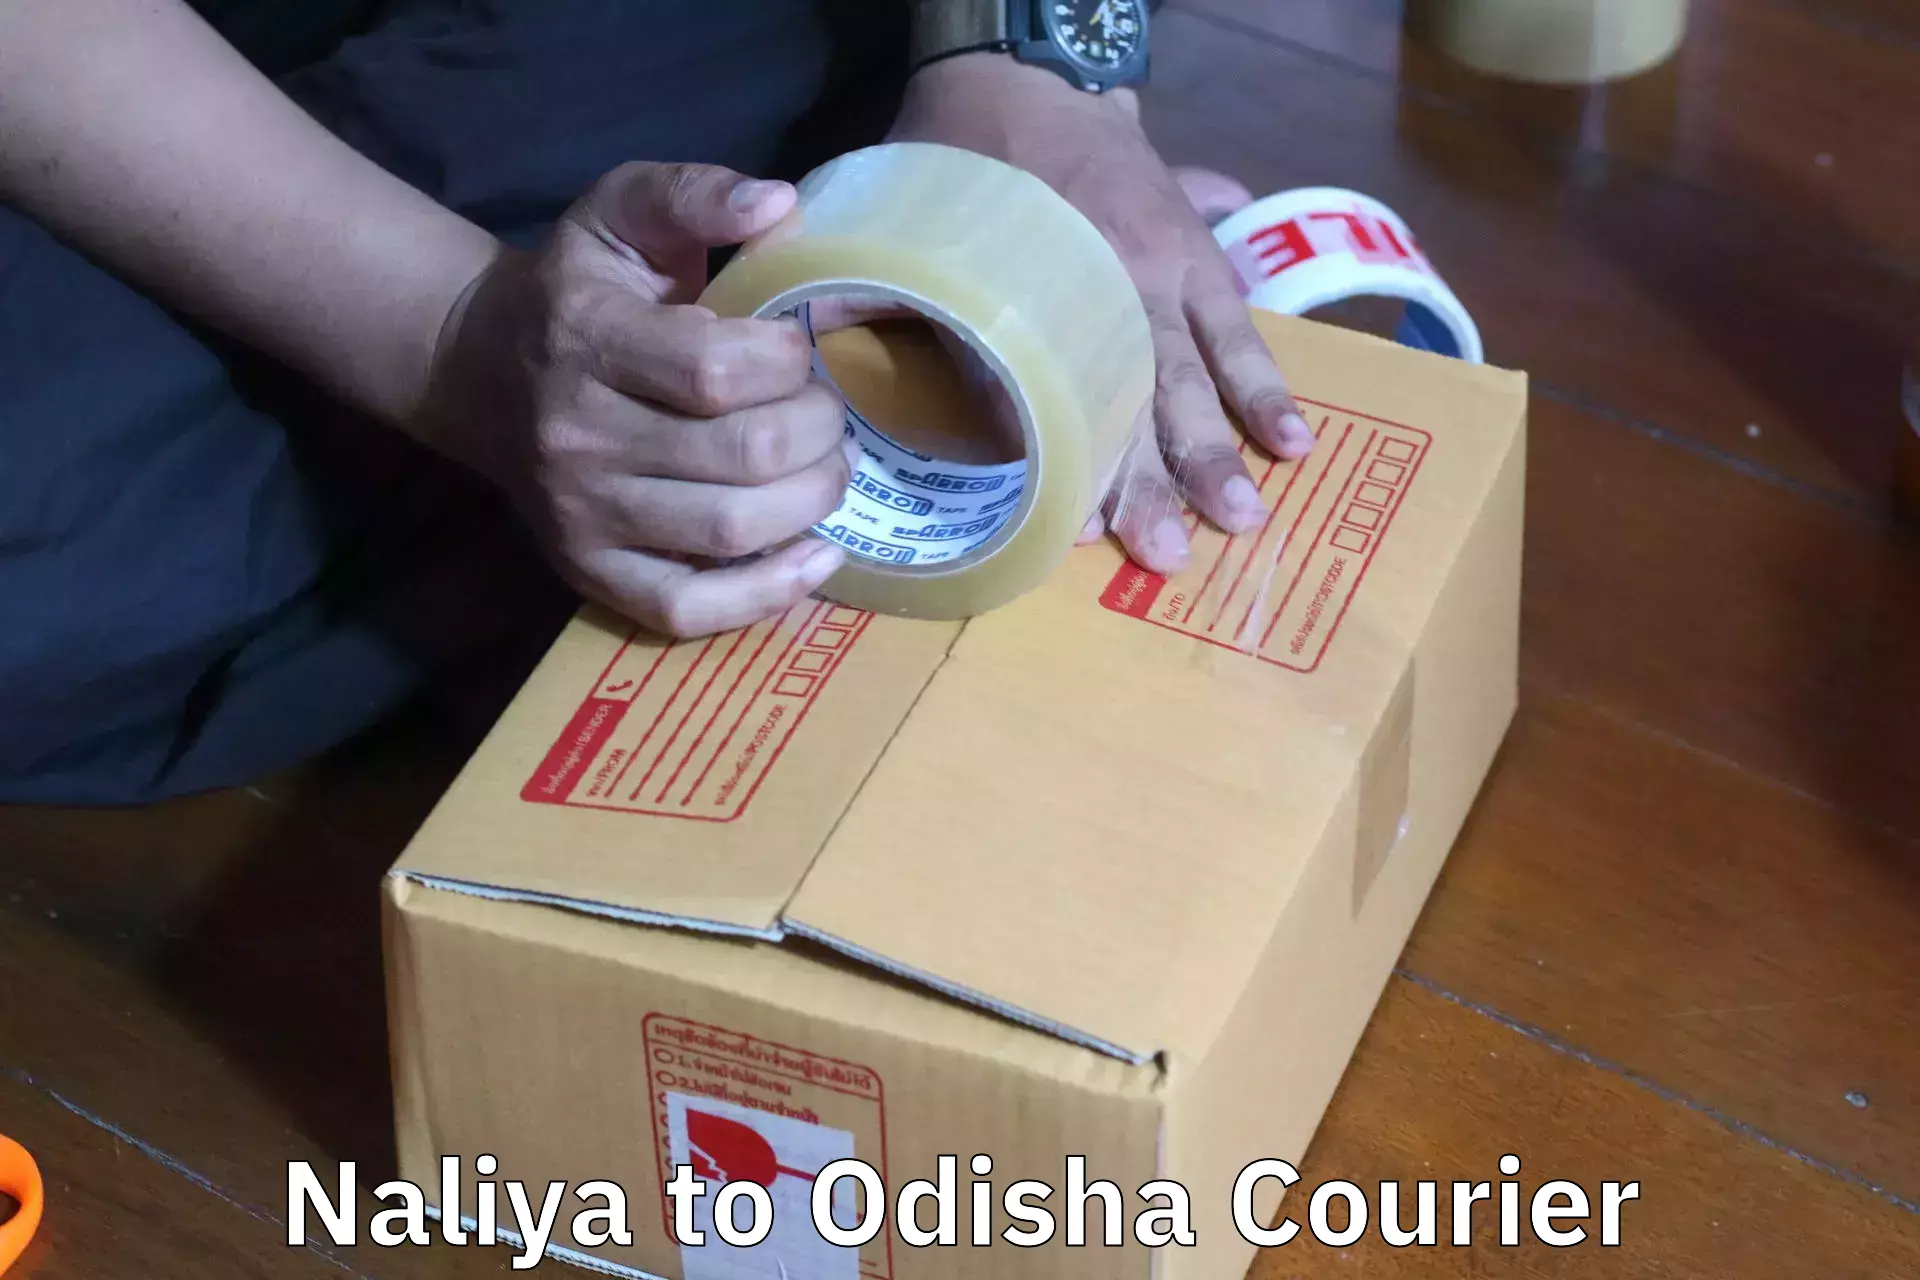 Furniture relocation experts Naliya to Asika